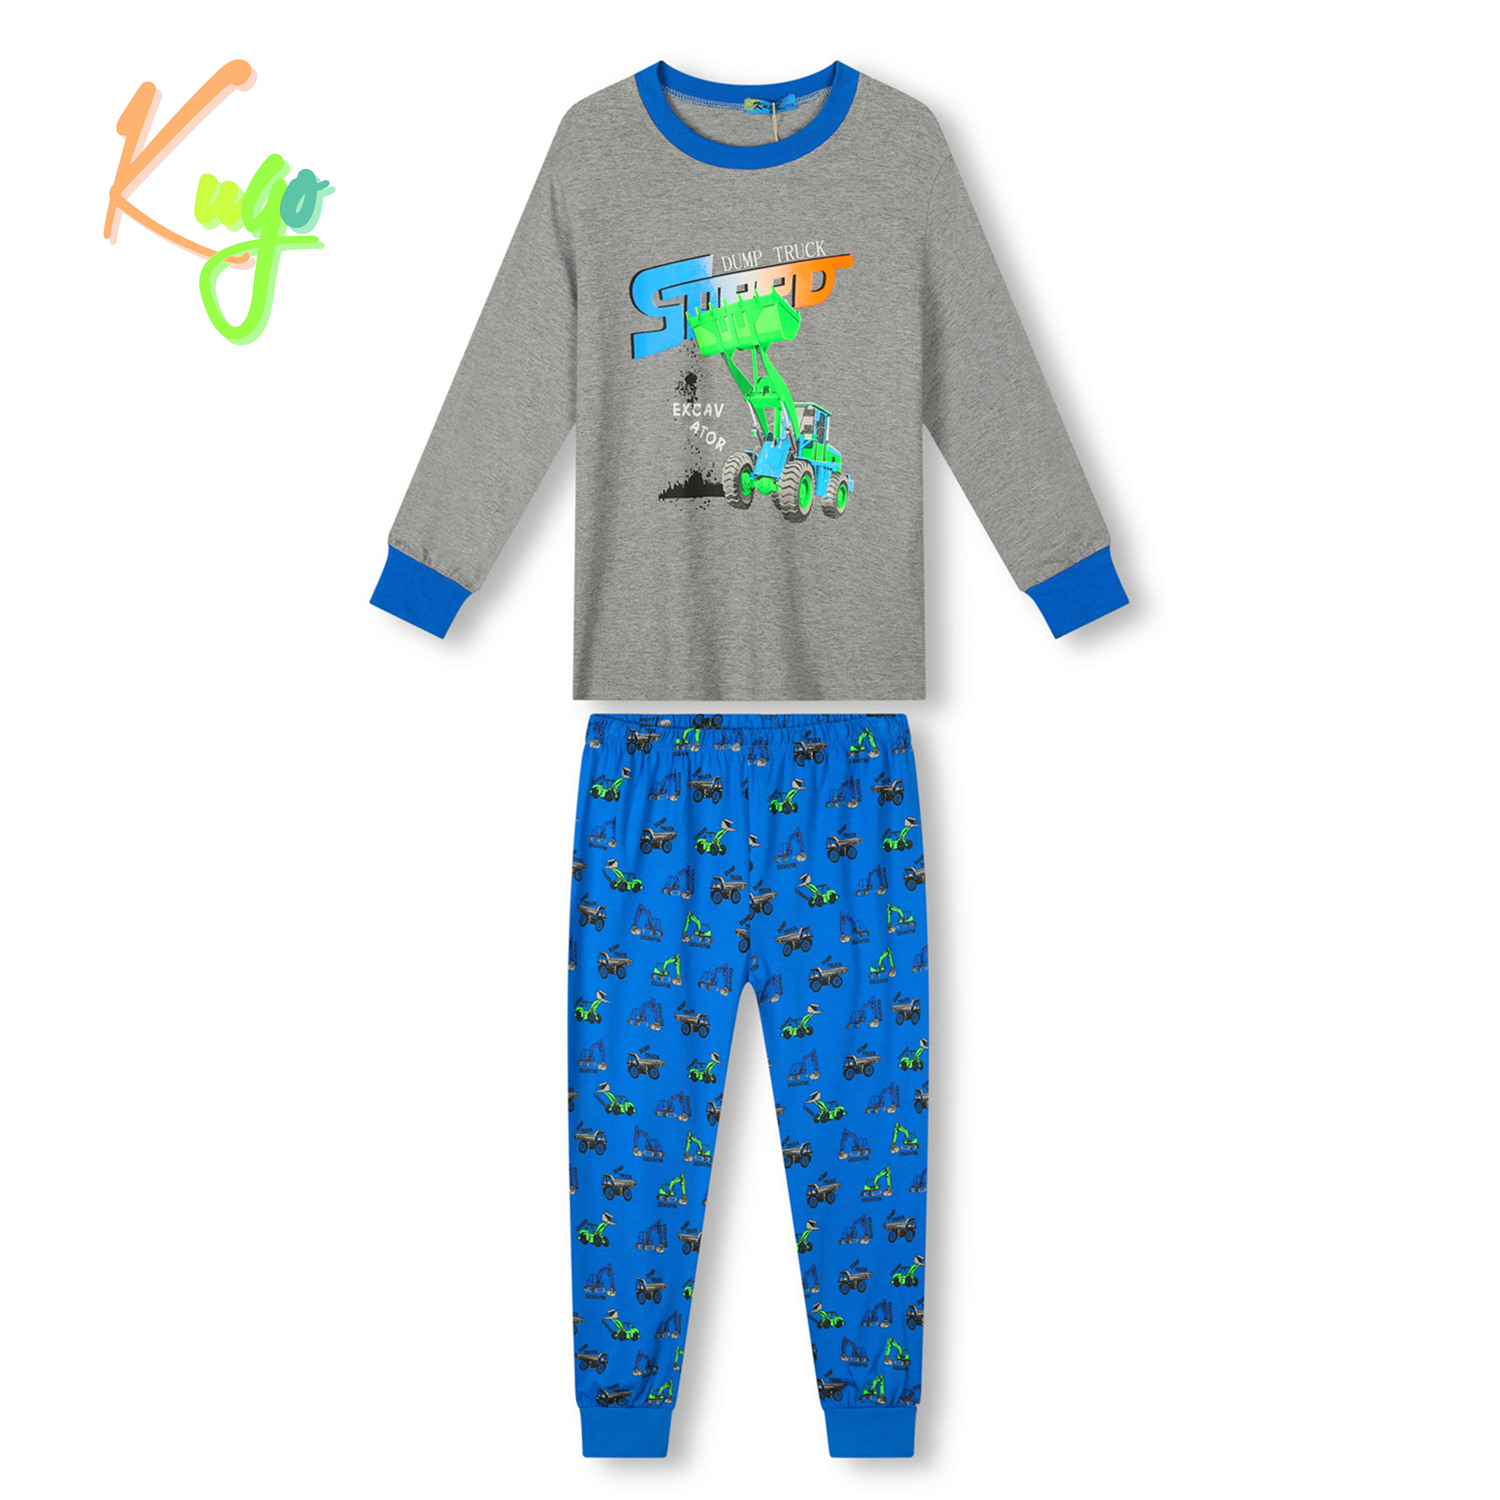 Chlapecké pyžamo - KUGO MP3778, šedá / modrá Barva: Šedá, Velikost: 98